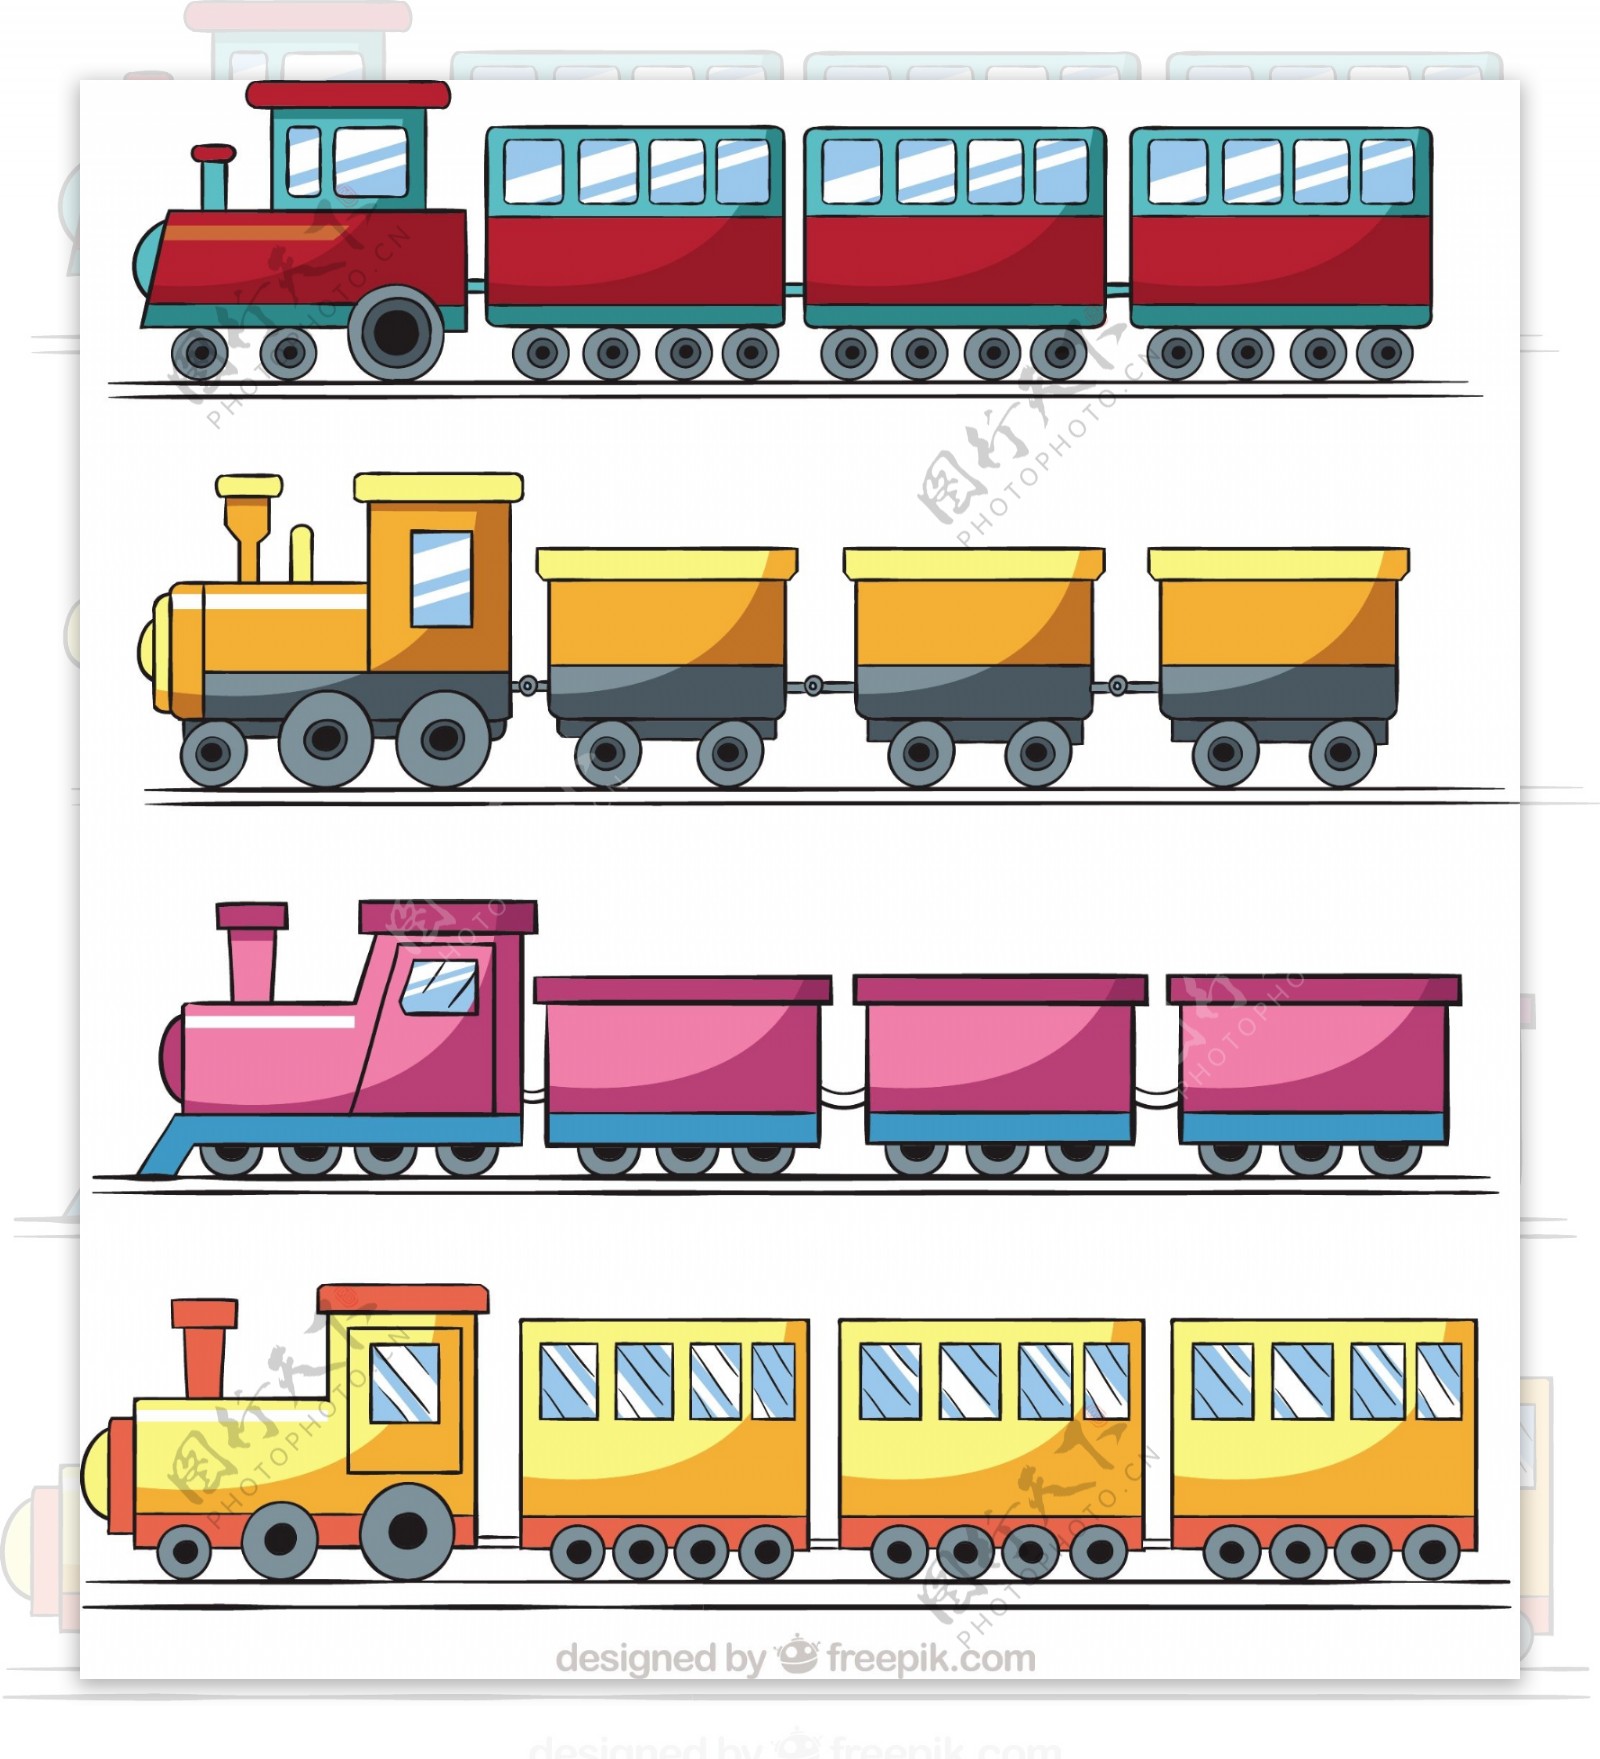 手绘四种玩具火车矢量插画